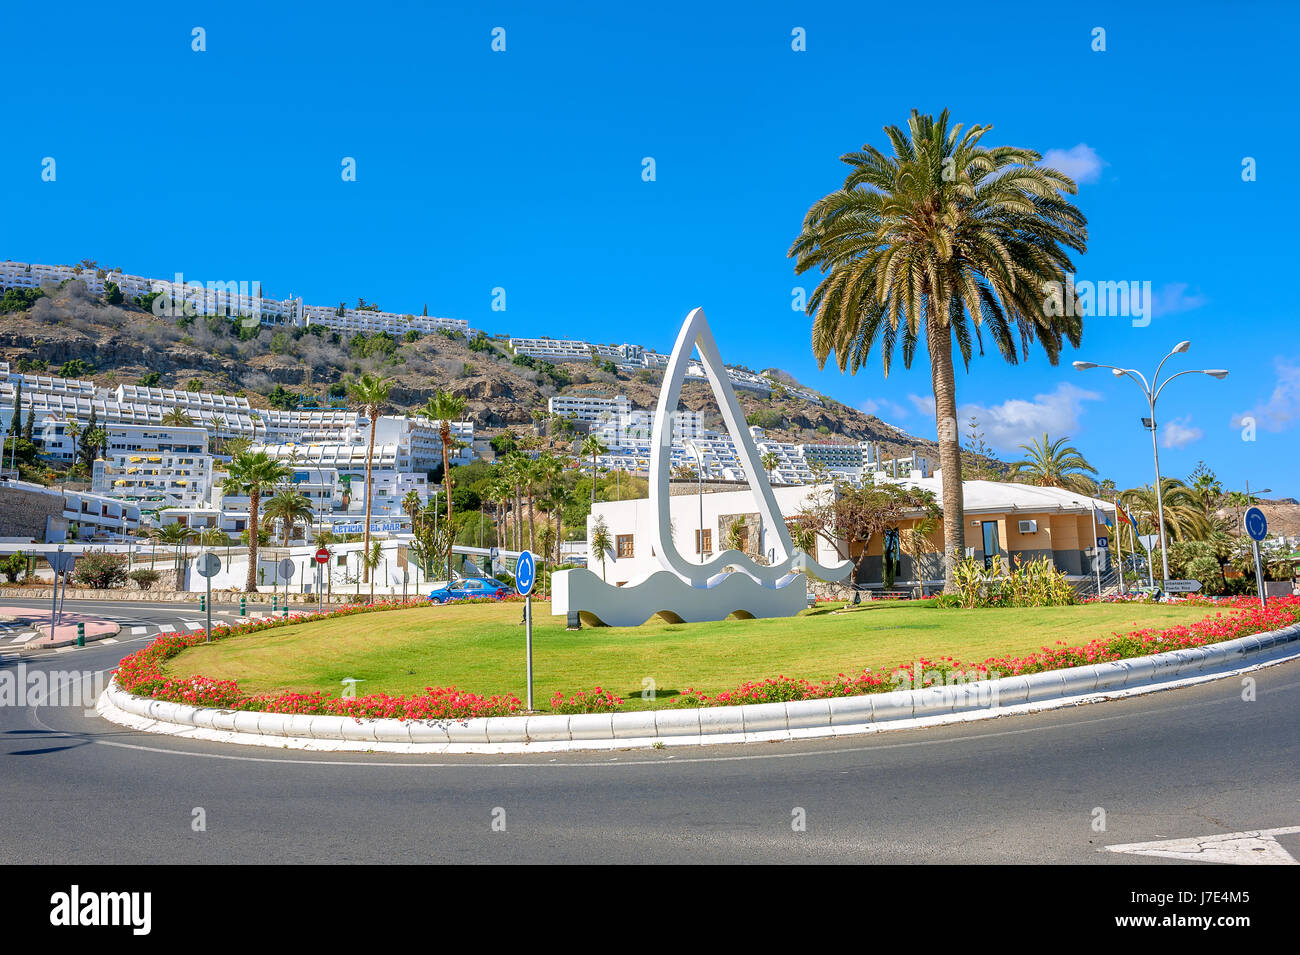 Le trafic urbain et élégant avec rond-point de droit maritime. PuertoRico, Gran Canaria, îles canaries Banque D'Images